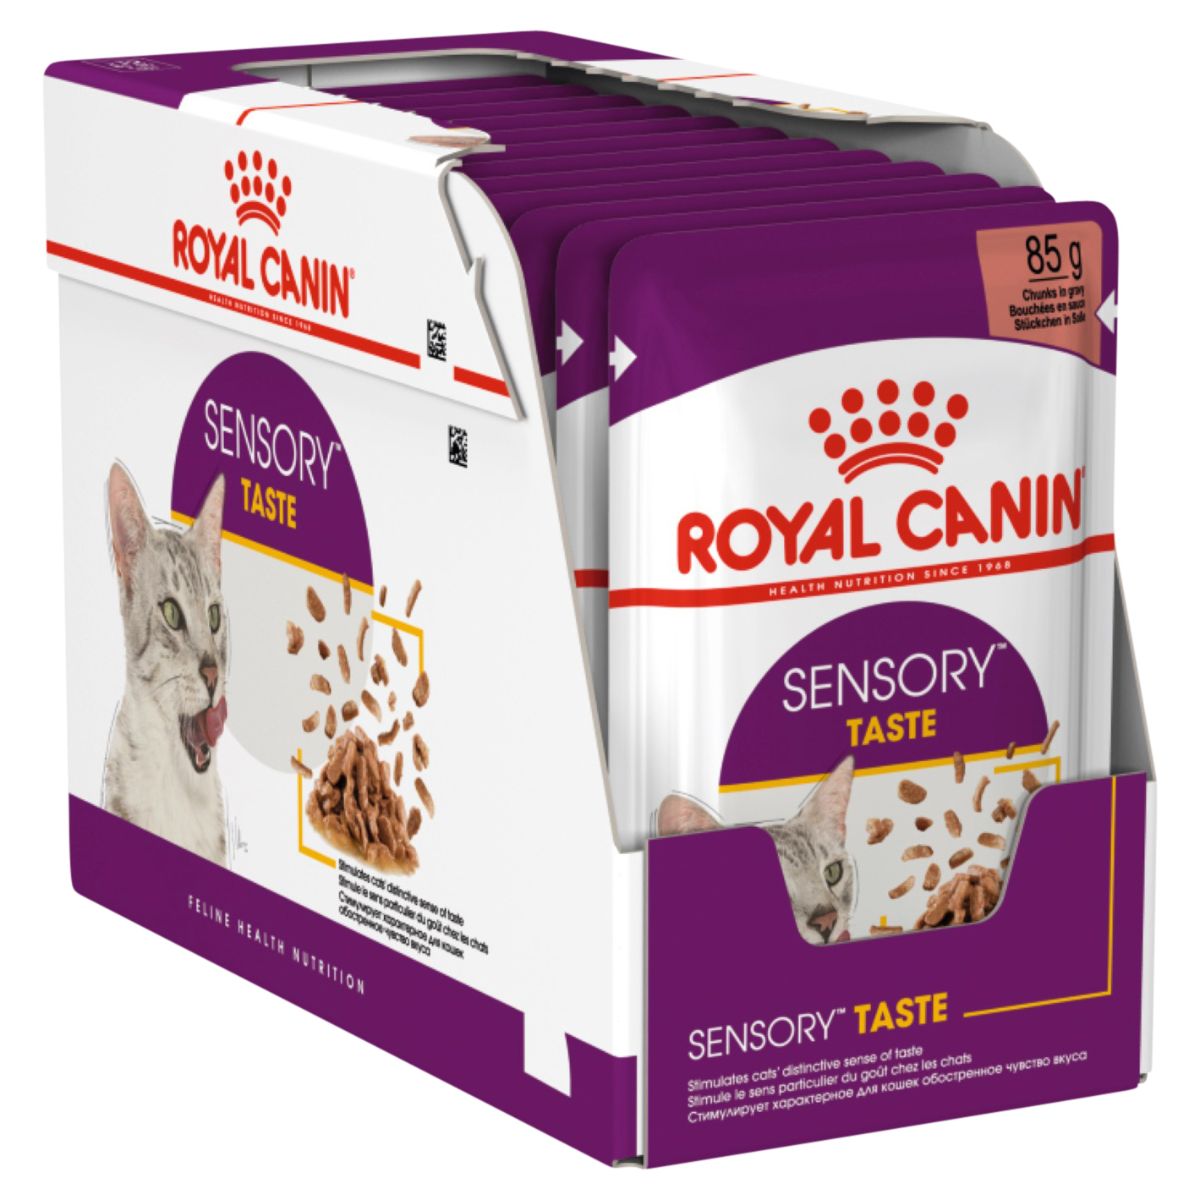 Royal Canin Sensory Taste Chunks in Gravy Wet Cat Food 85G